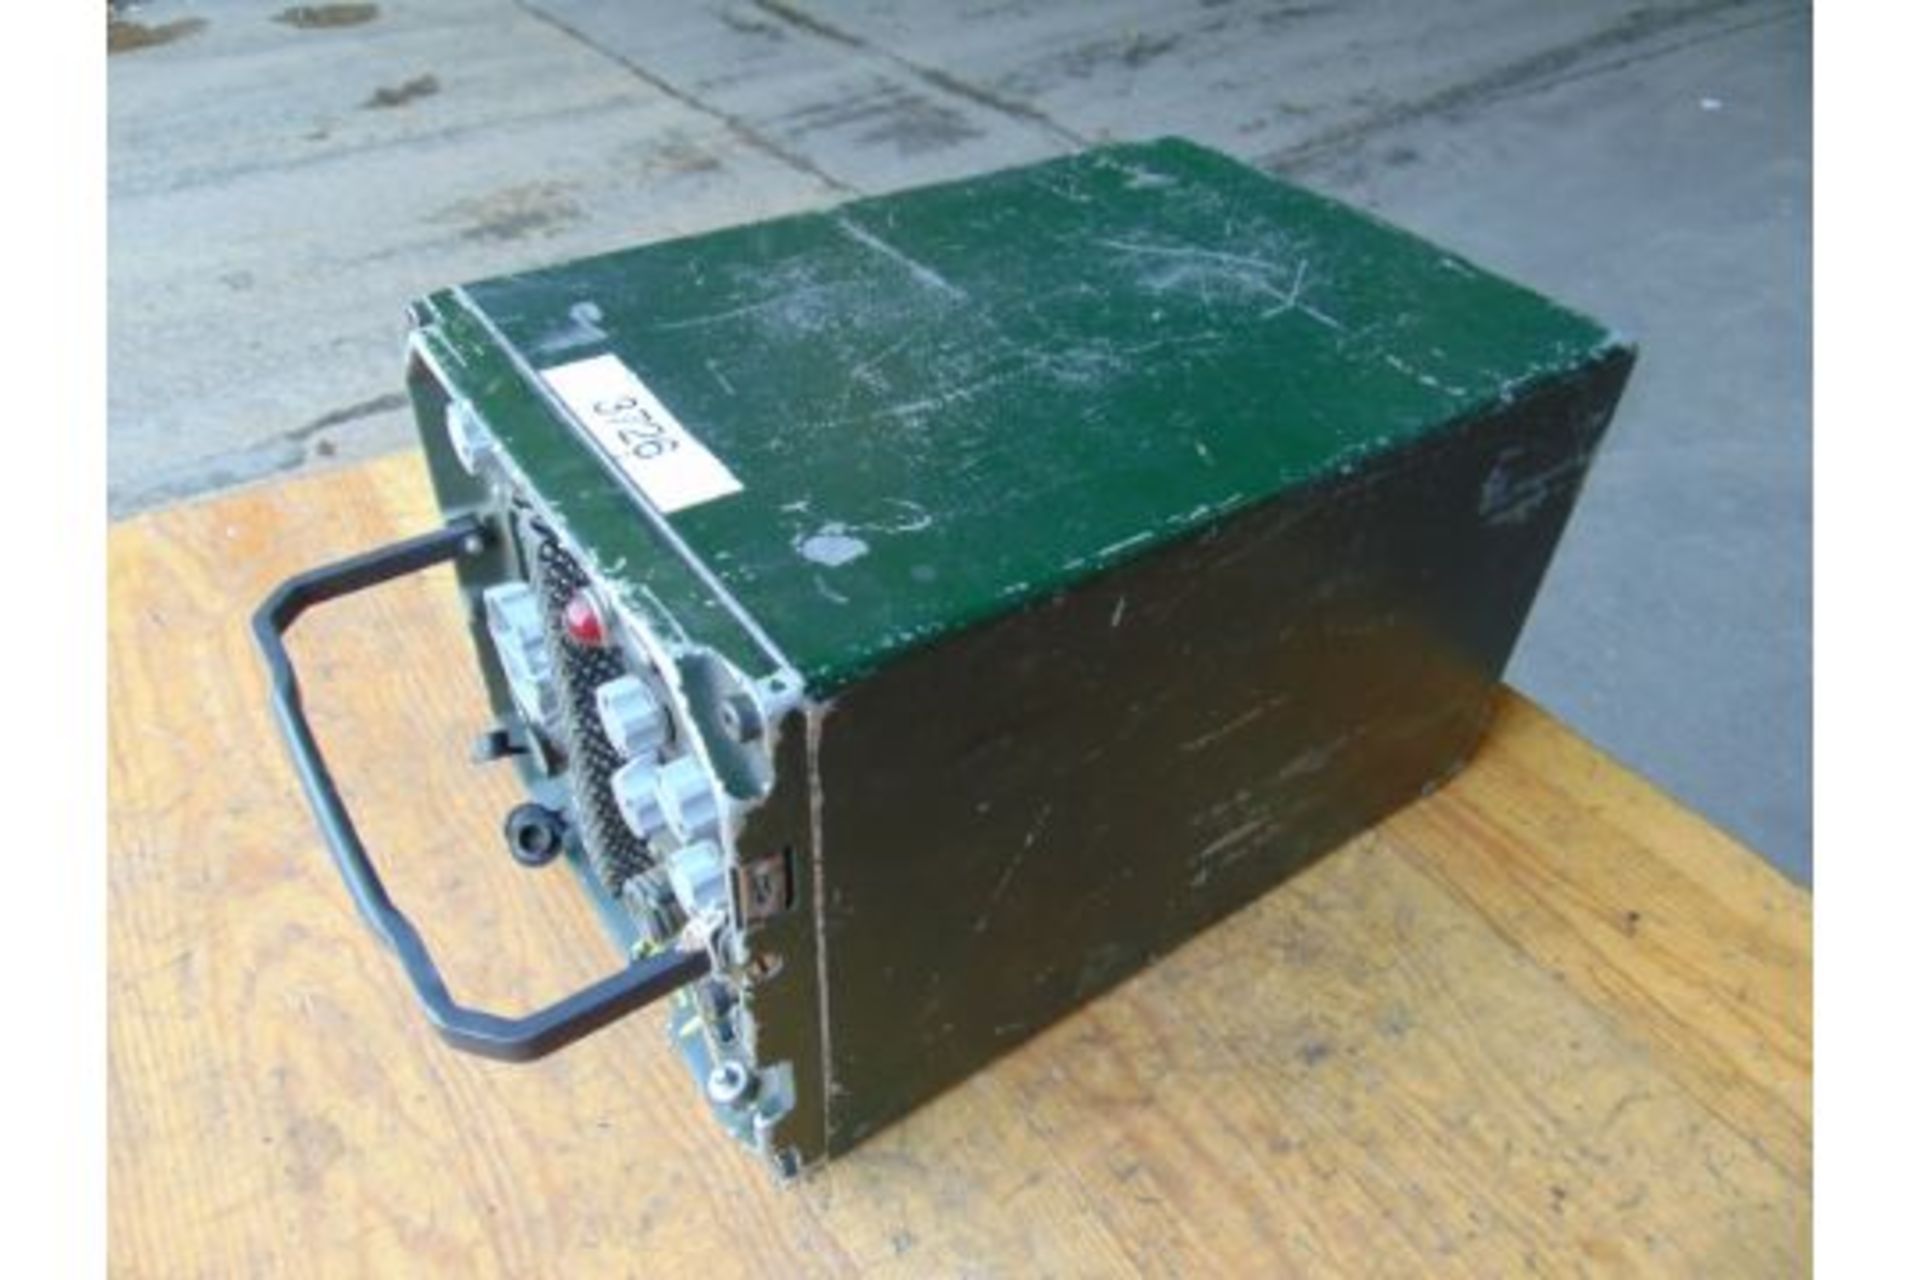 Clansman UK RT 353 VHF Transmitter Receiver Radio - Image 3 of 3